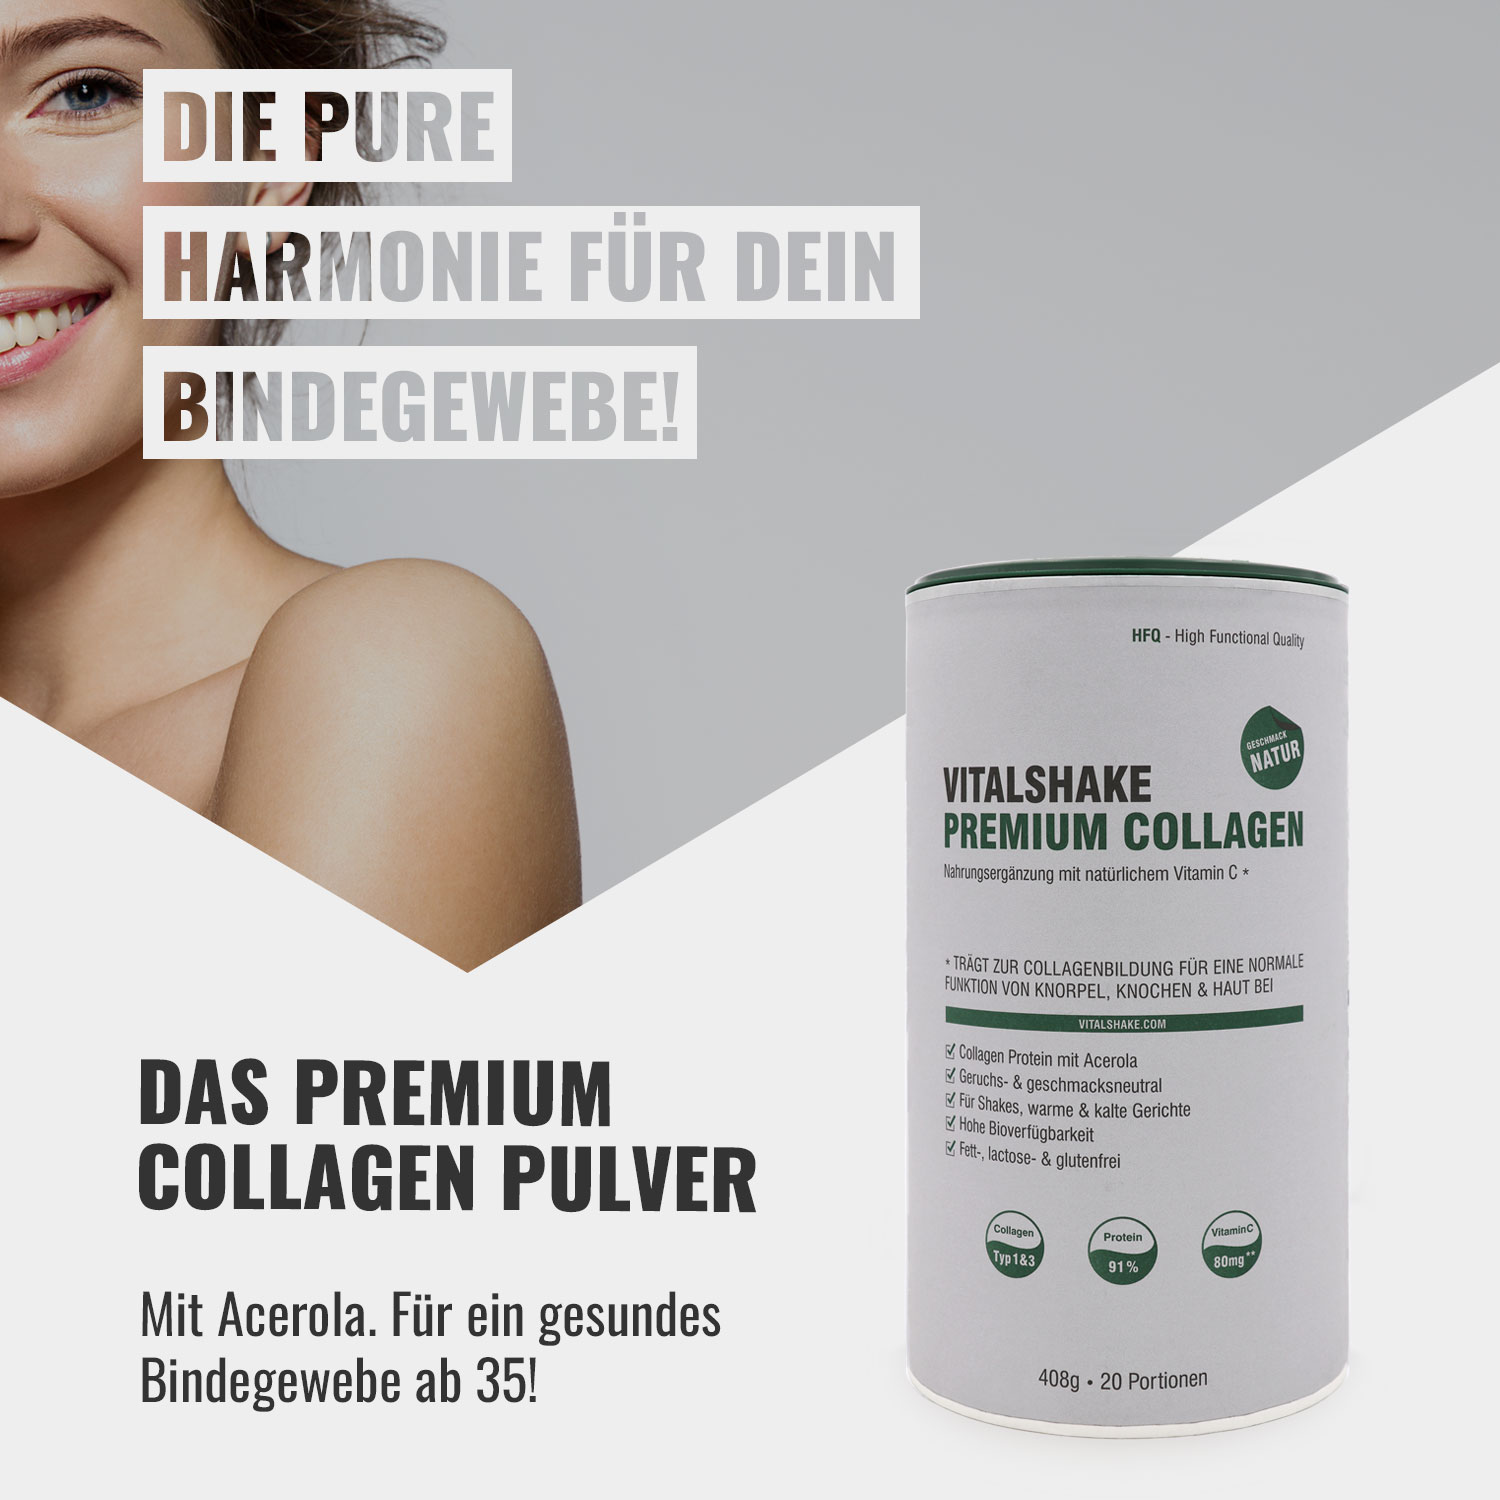 Vitalshake Premium Collagen Pulver für dein Bindegewebe